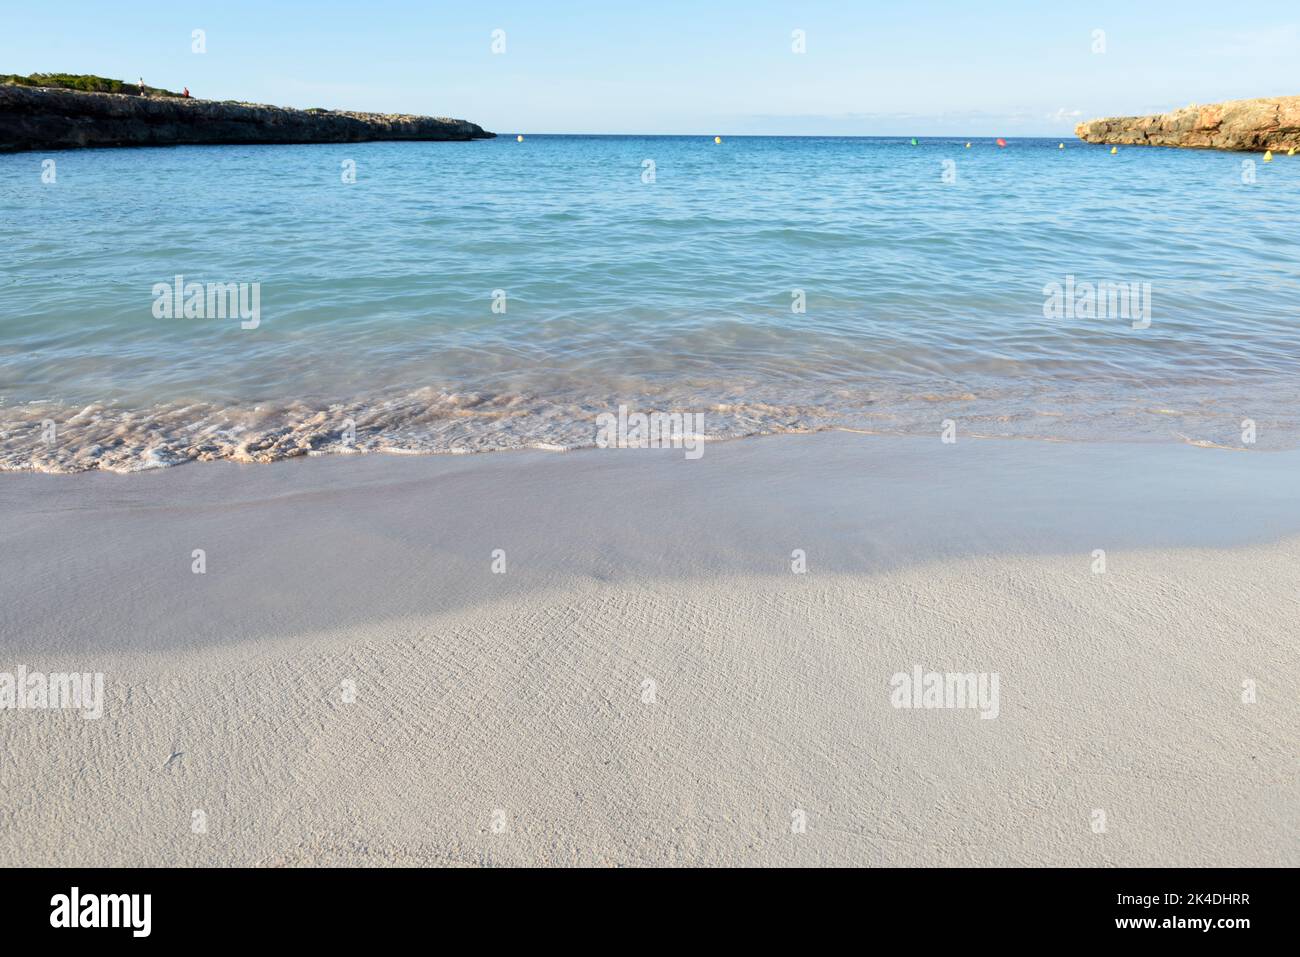 Belle vue sur l'eau claire au bord de la mer sur une plage de sable Banque D'Images